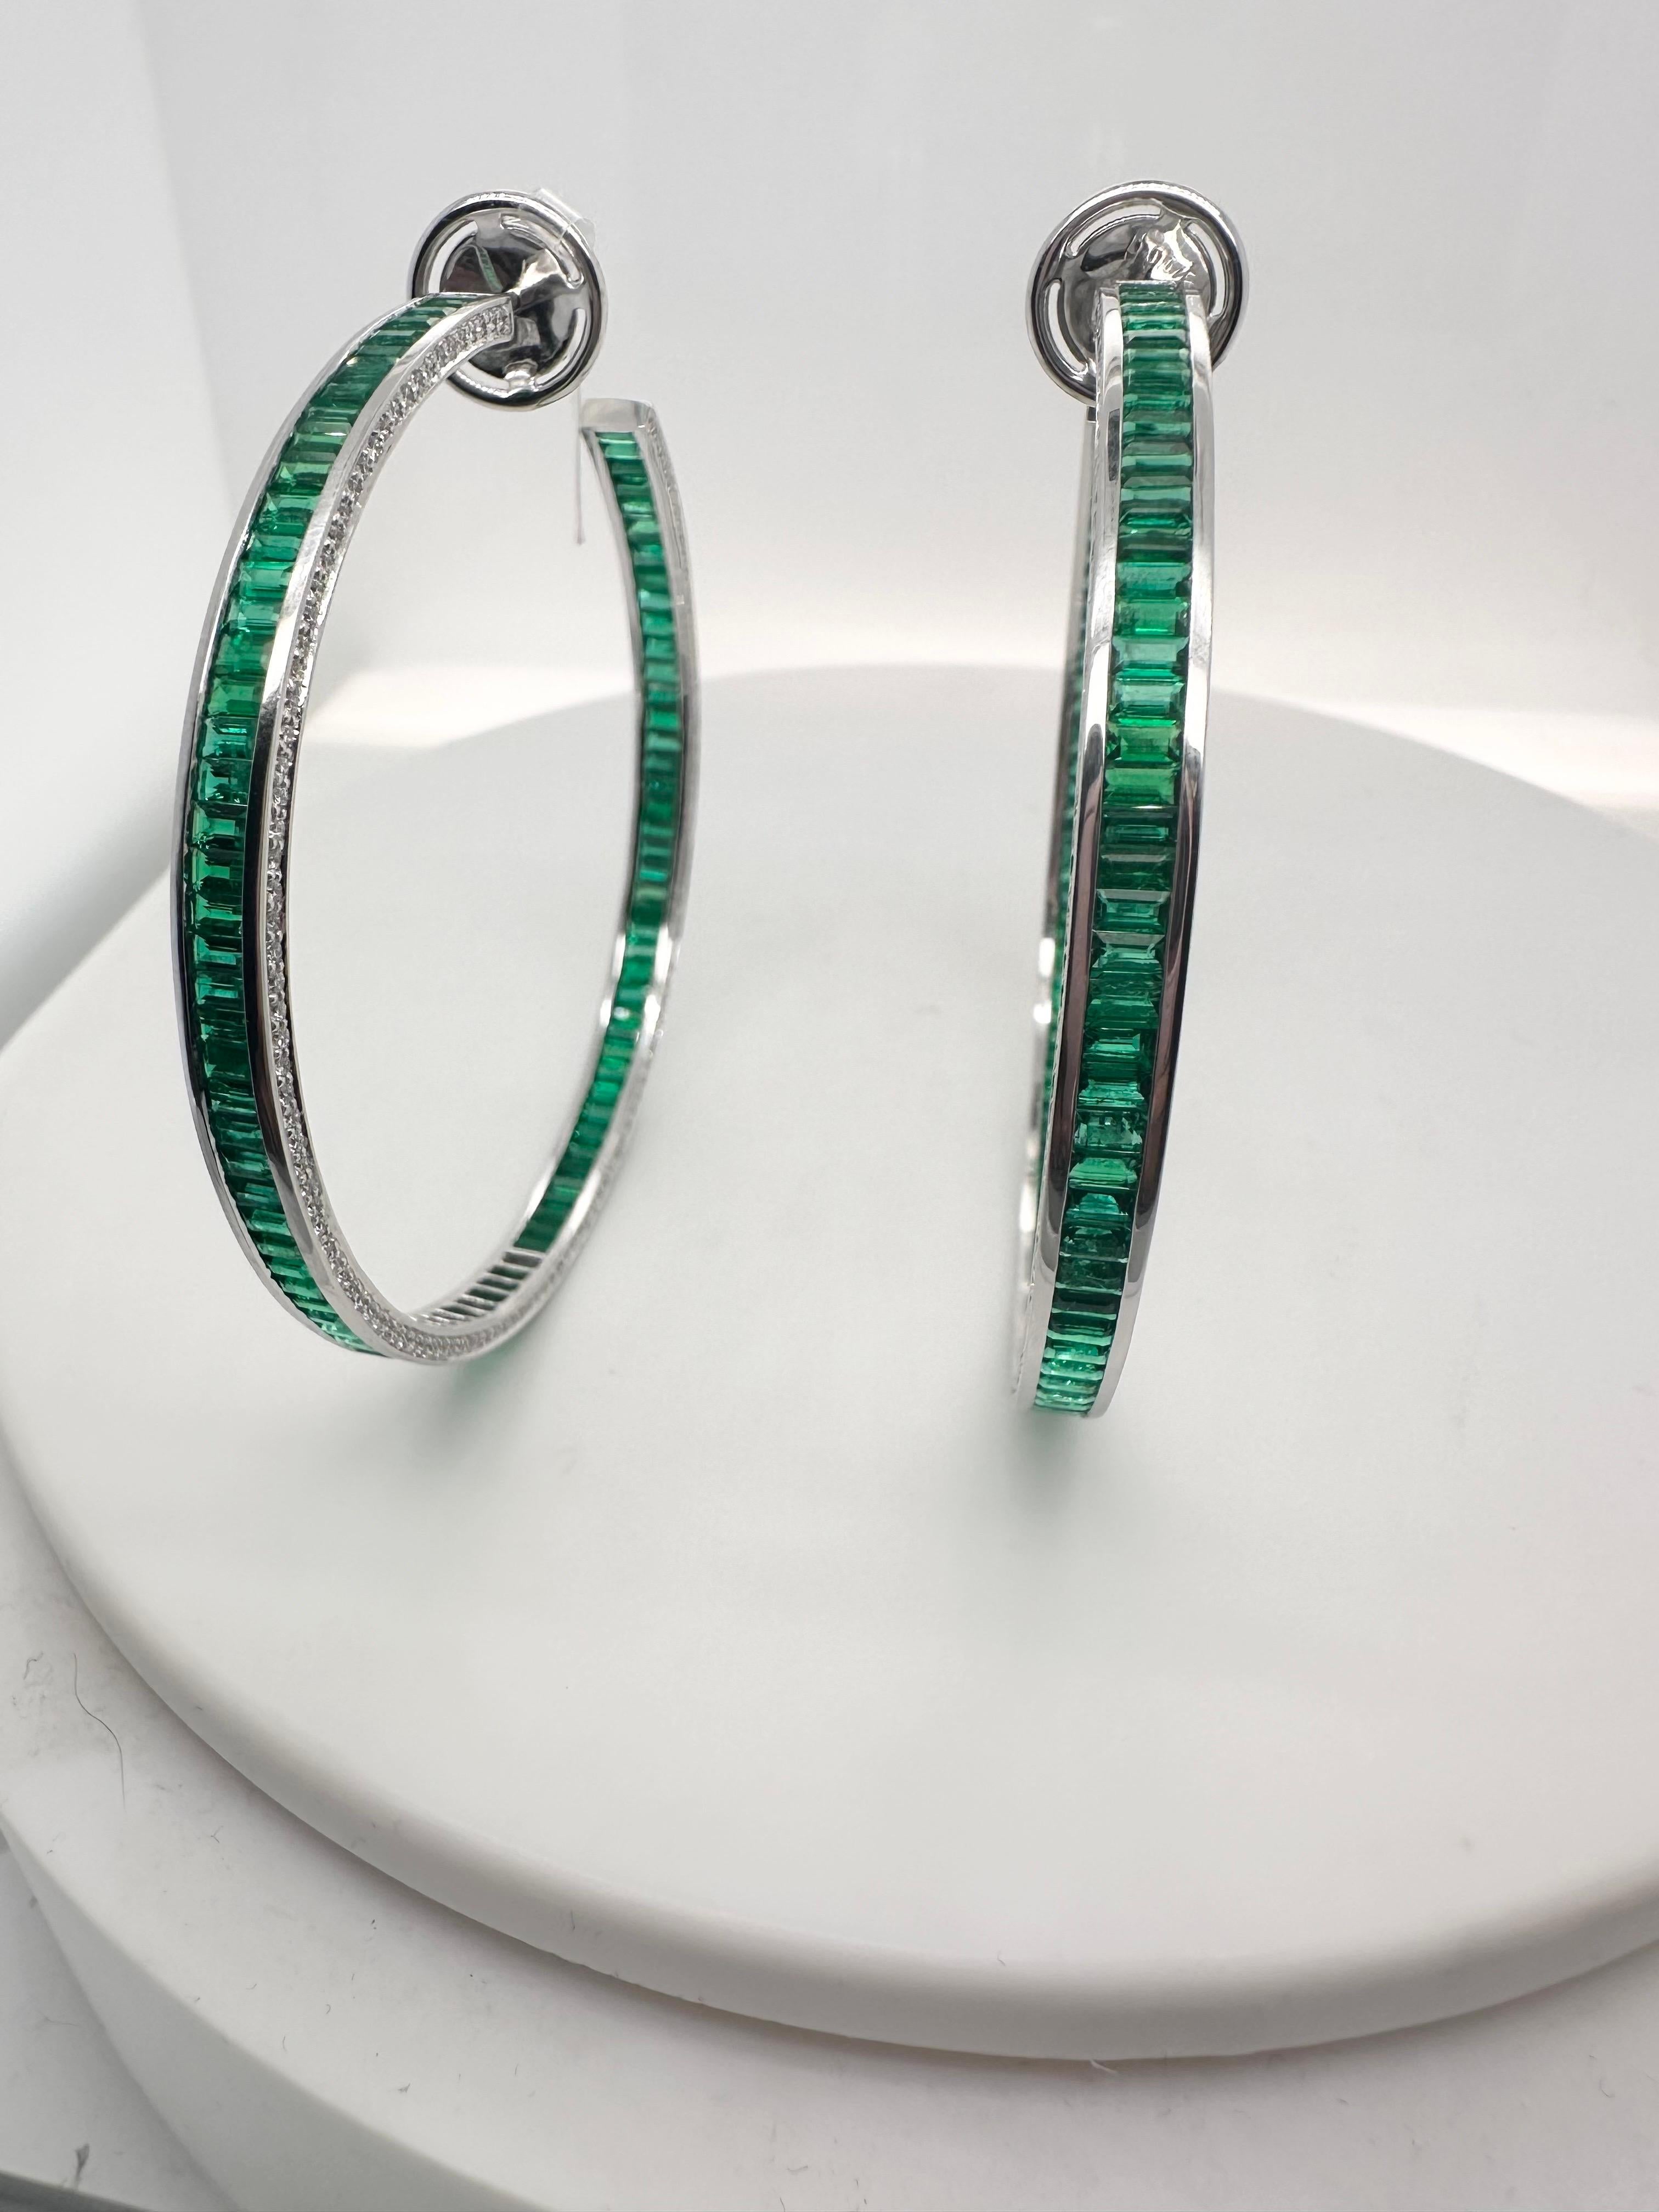 Exquisite Ohrringe mit so vielen Details und außergewöhnlicher Handwerkskunst, kolumbianische Smaragde, feine grüne Smaragde mit natürlichen feinen Diamanten in einem ausgefallenen Reifendesign! Sogar der Schmetterling hat Diamanten! Diese Ohrringe